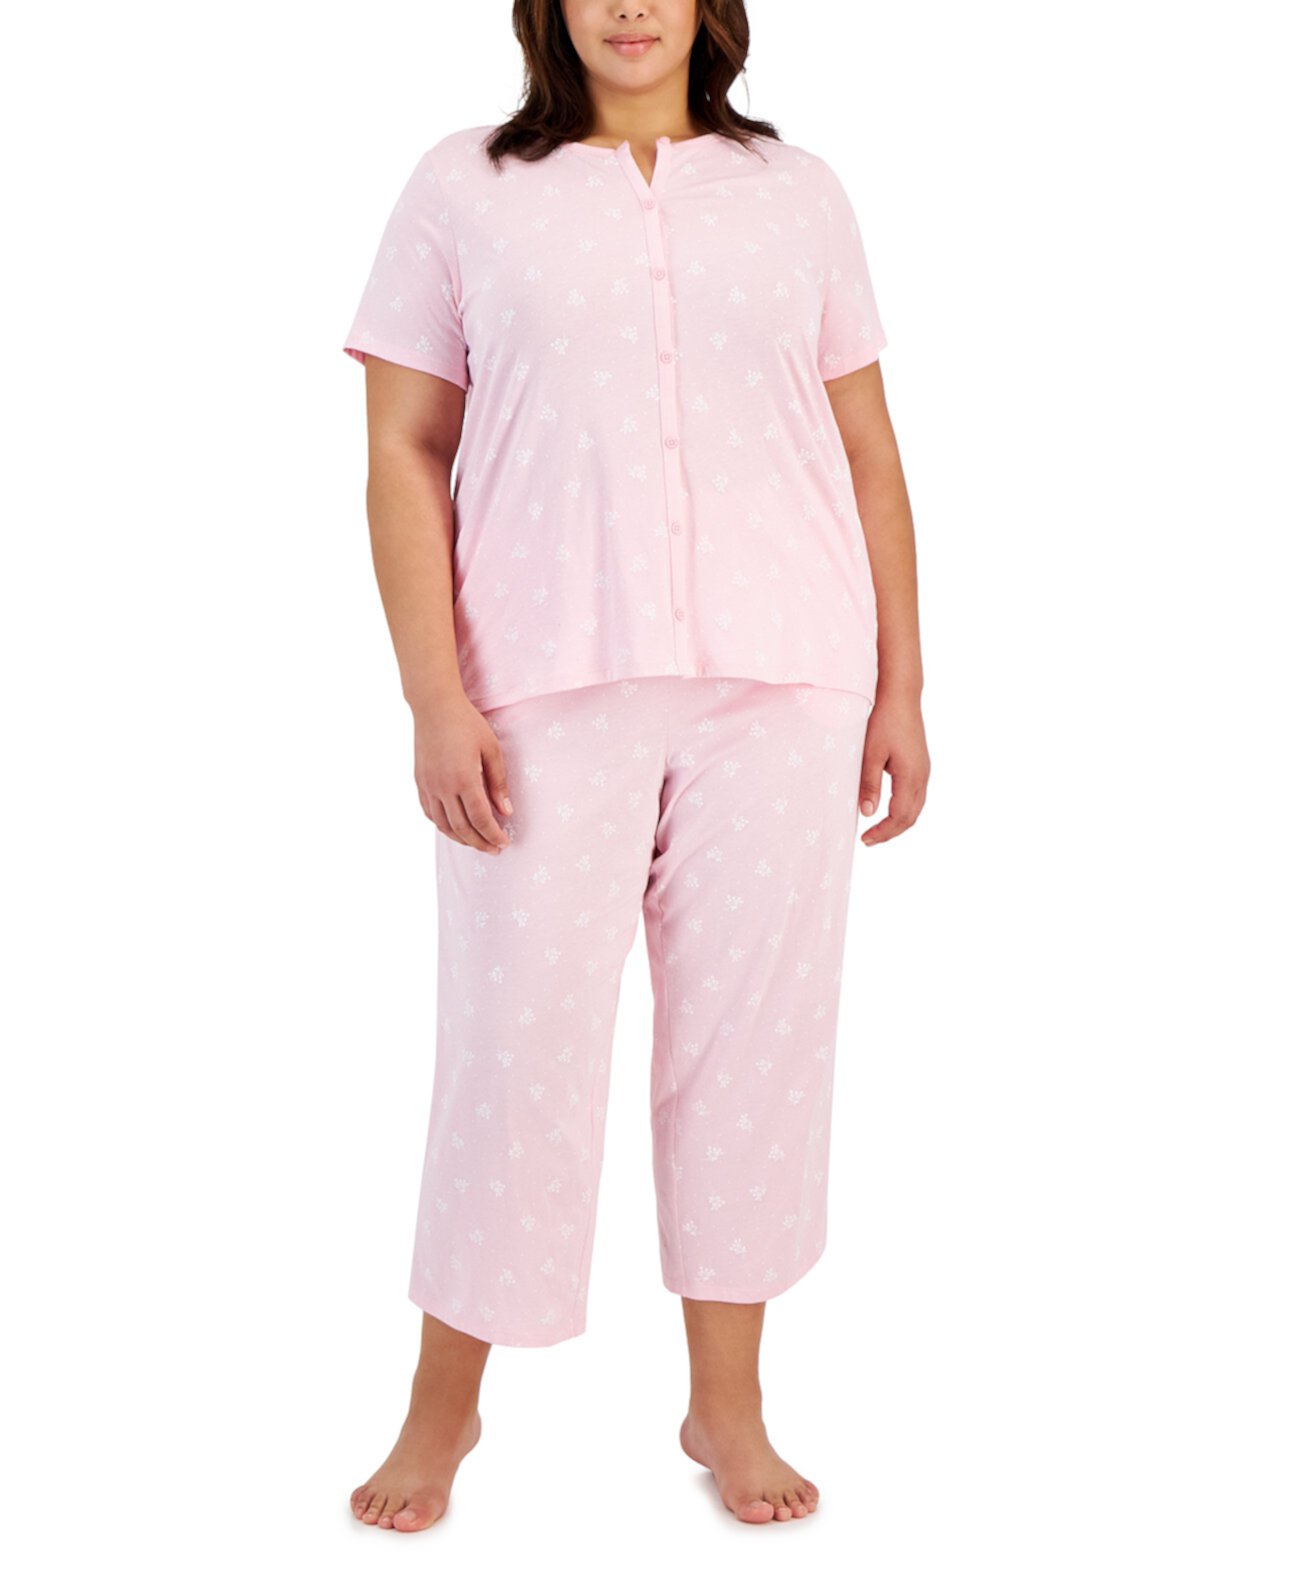 Плюс Размер 2 шт. Хлопковый укороченный пижамный комплект с цветочным принтом, созданный для Macy's Charter Club